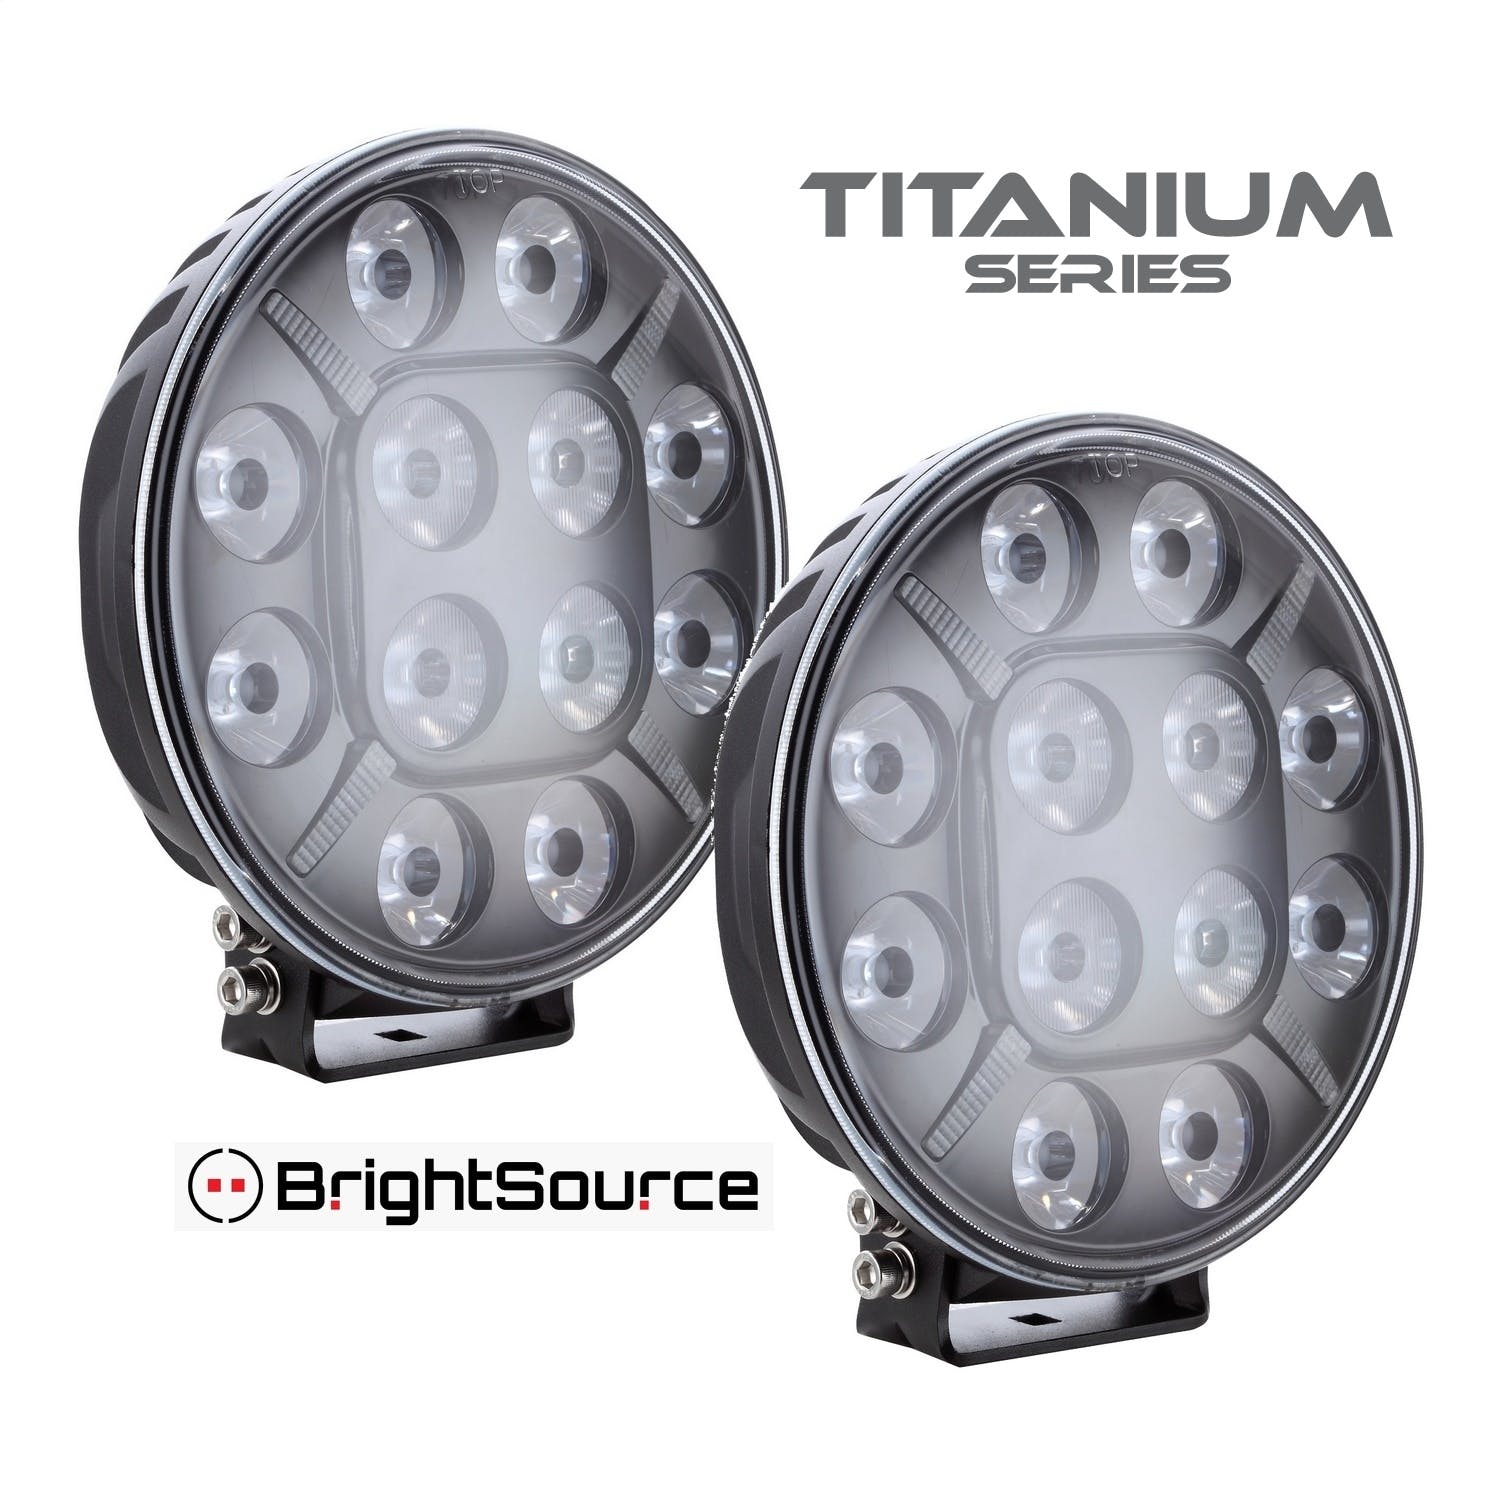 BrightSource 870092 Titanium Series LED Driving Light Kit